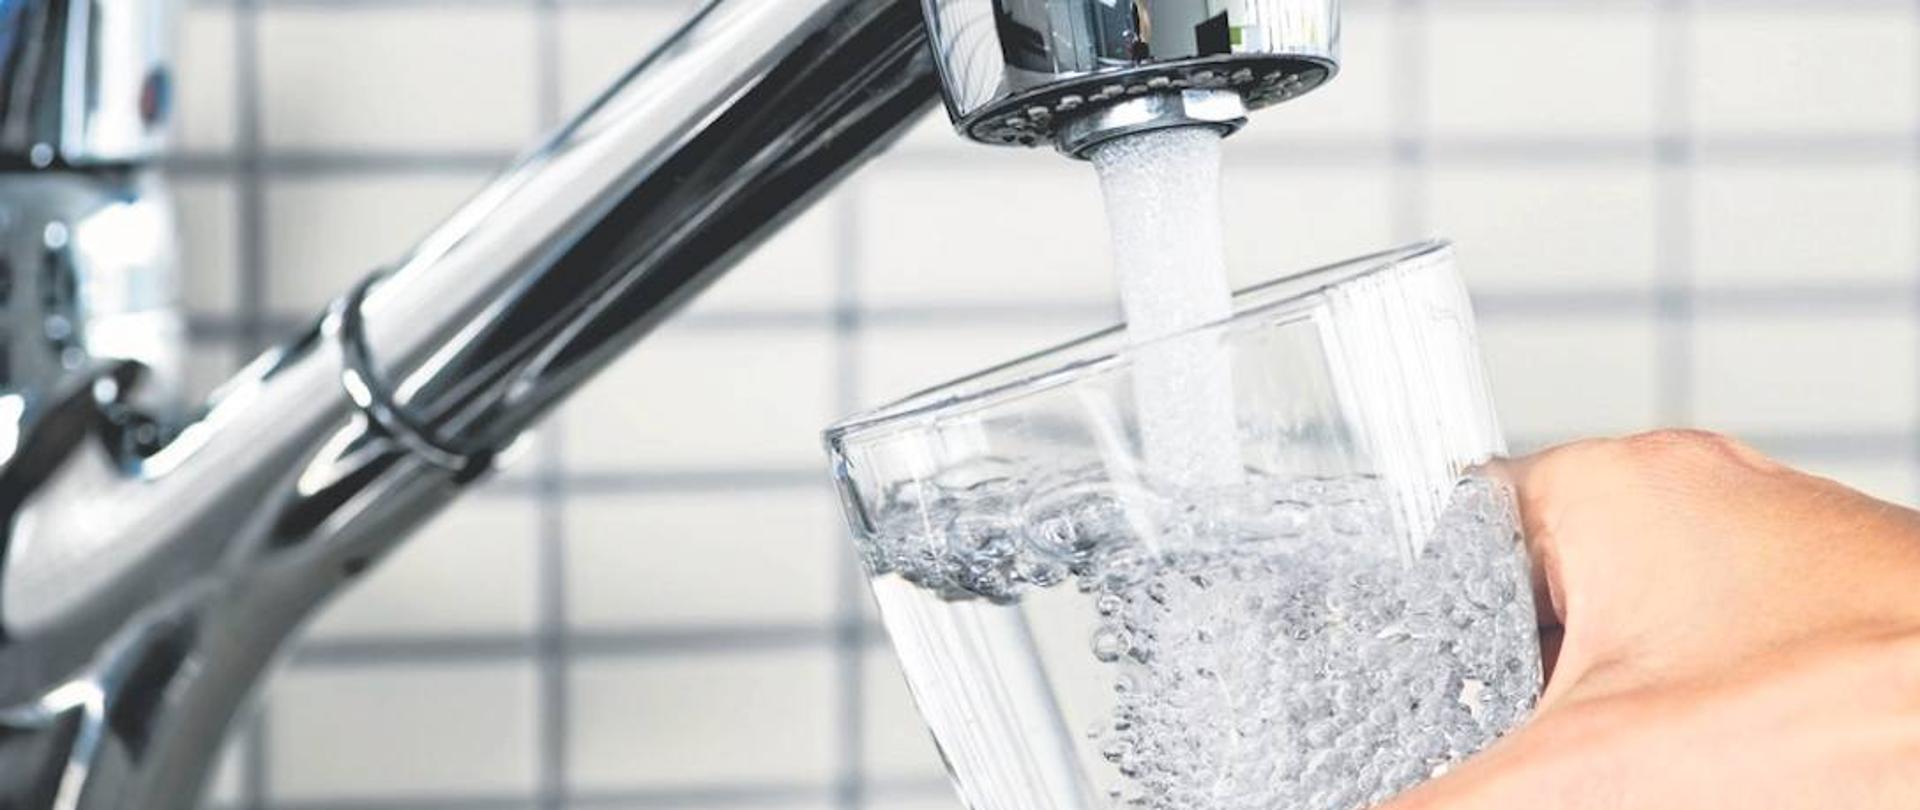 Komunikat PPIS w Bytomiu dotyczący jakości wody